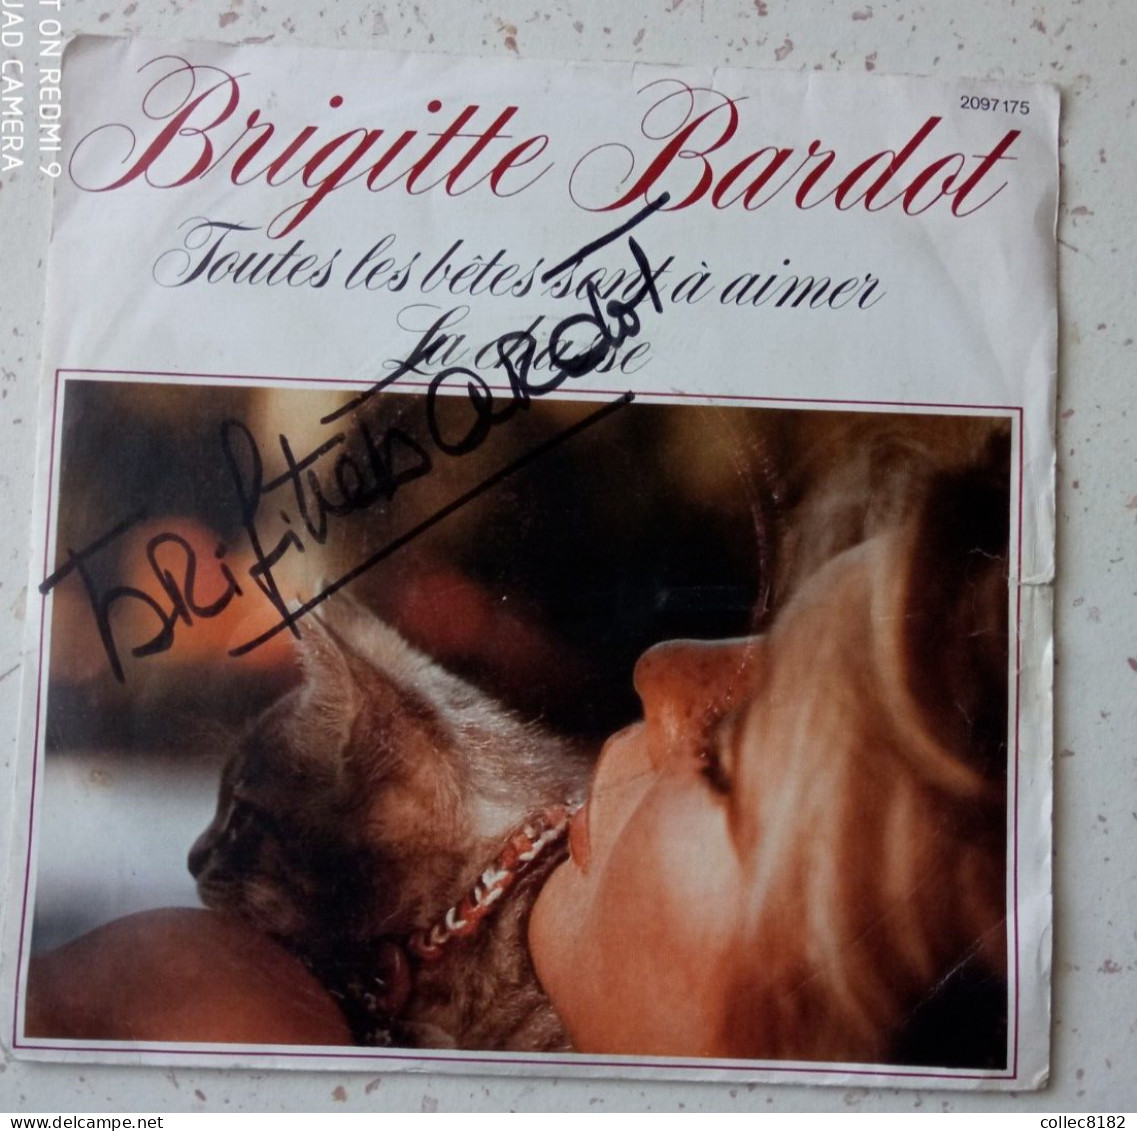 Autographe Original De Brigitte Bardot Sur 45 Tr Toutes Les Bêtes Sont à Aimer Port Offert France - Otros - Canción Francesa